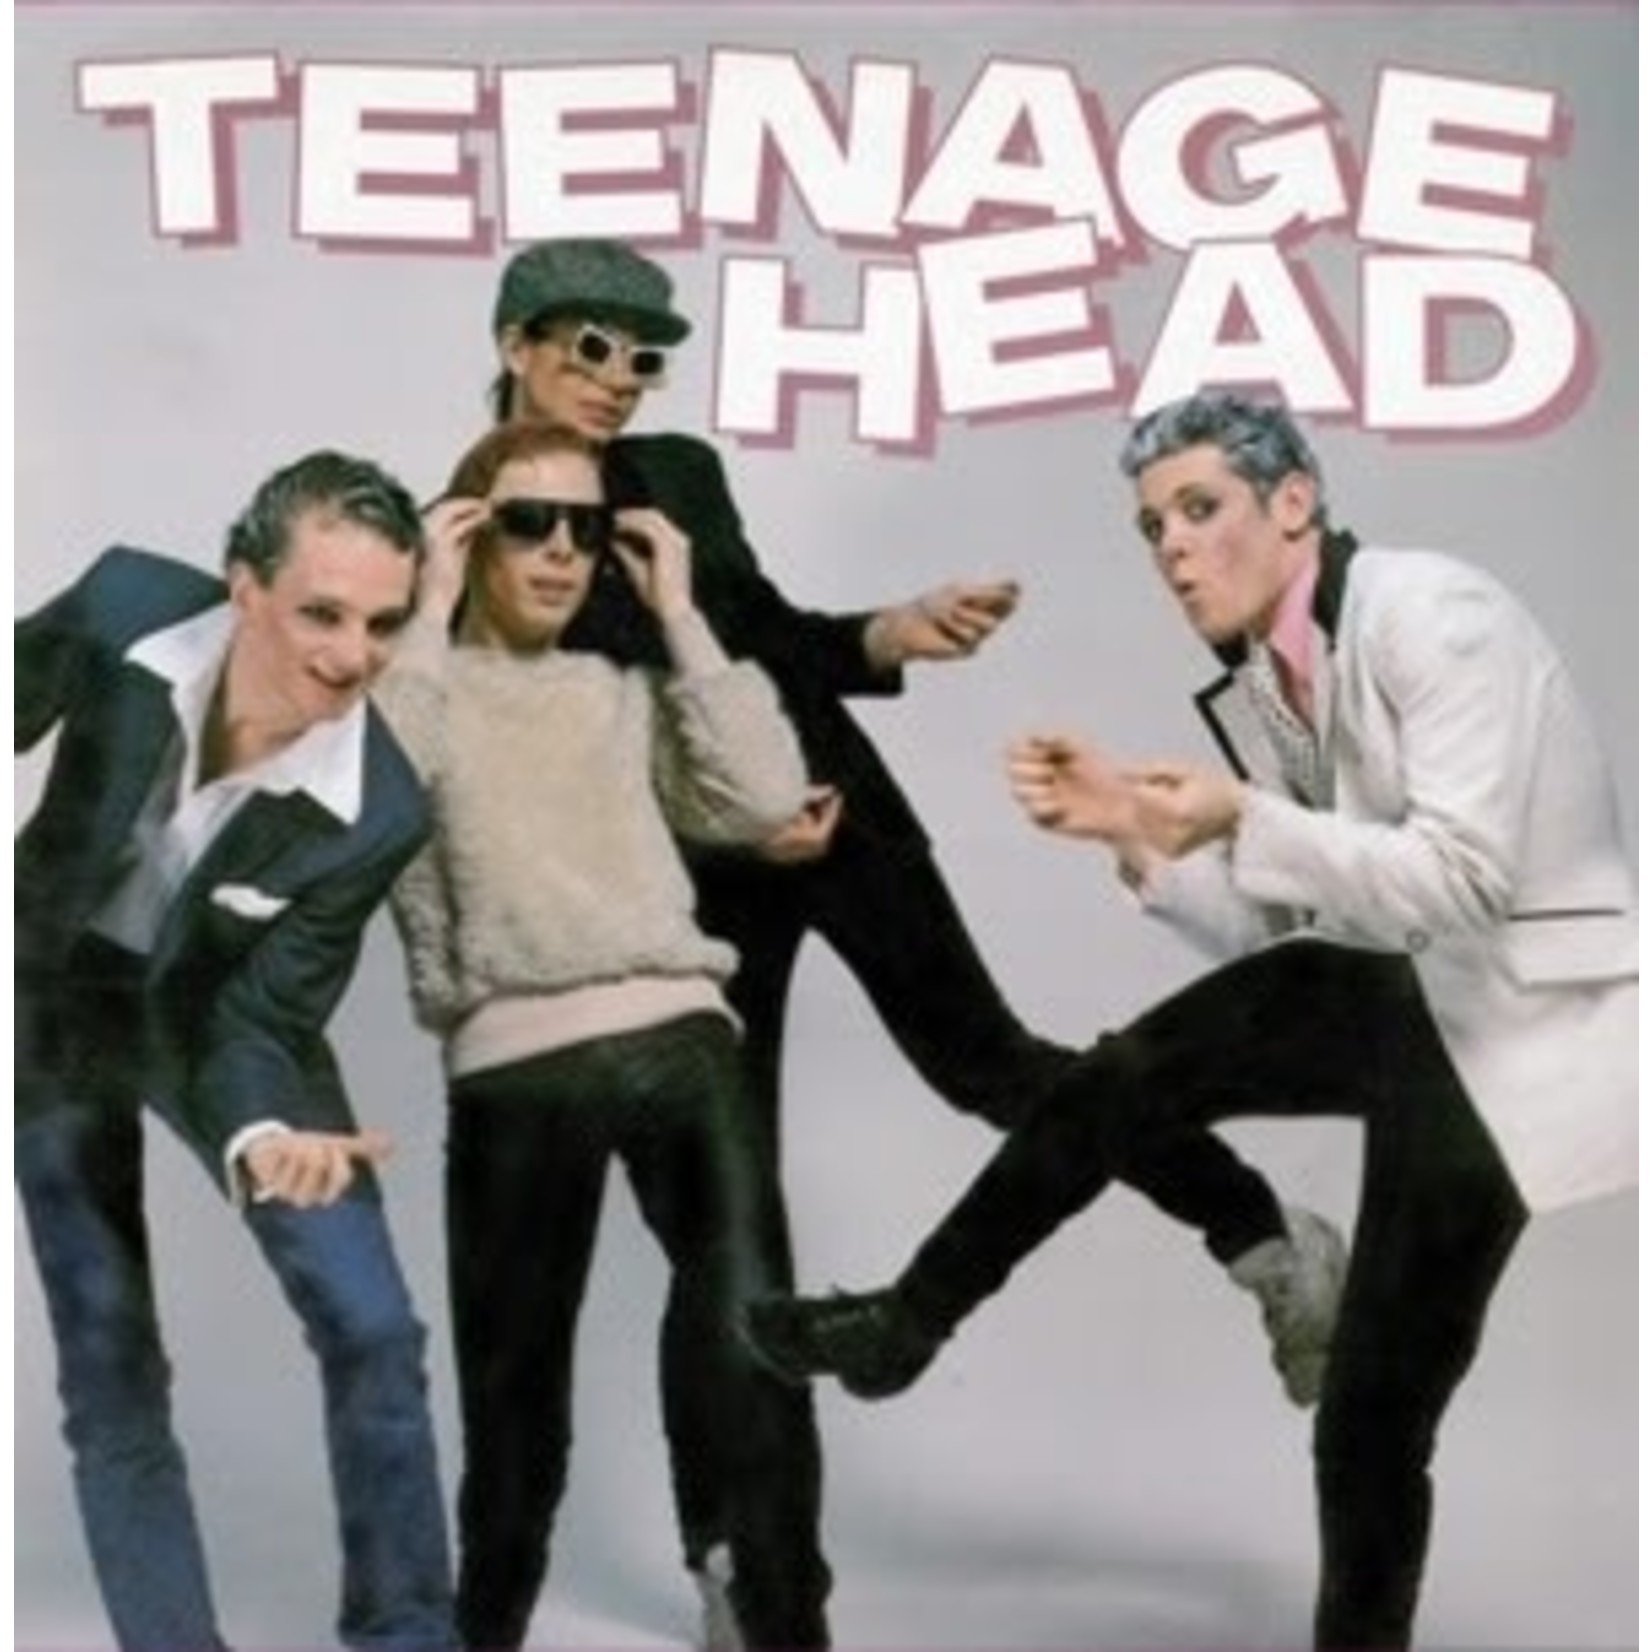 [Vintage] Teenage Head - self-titled